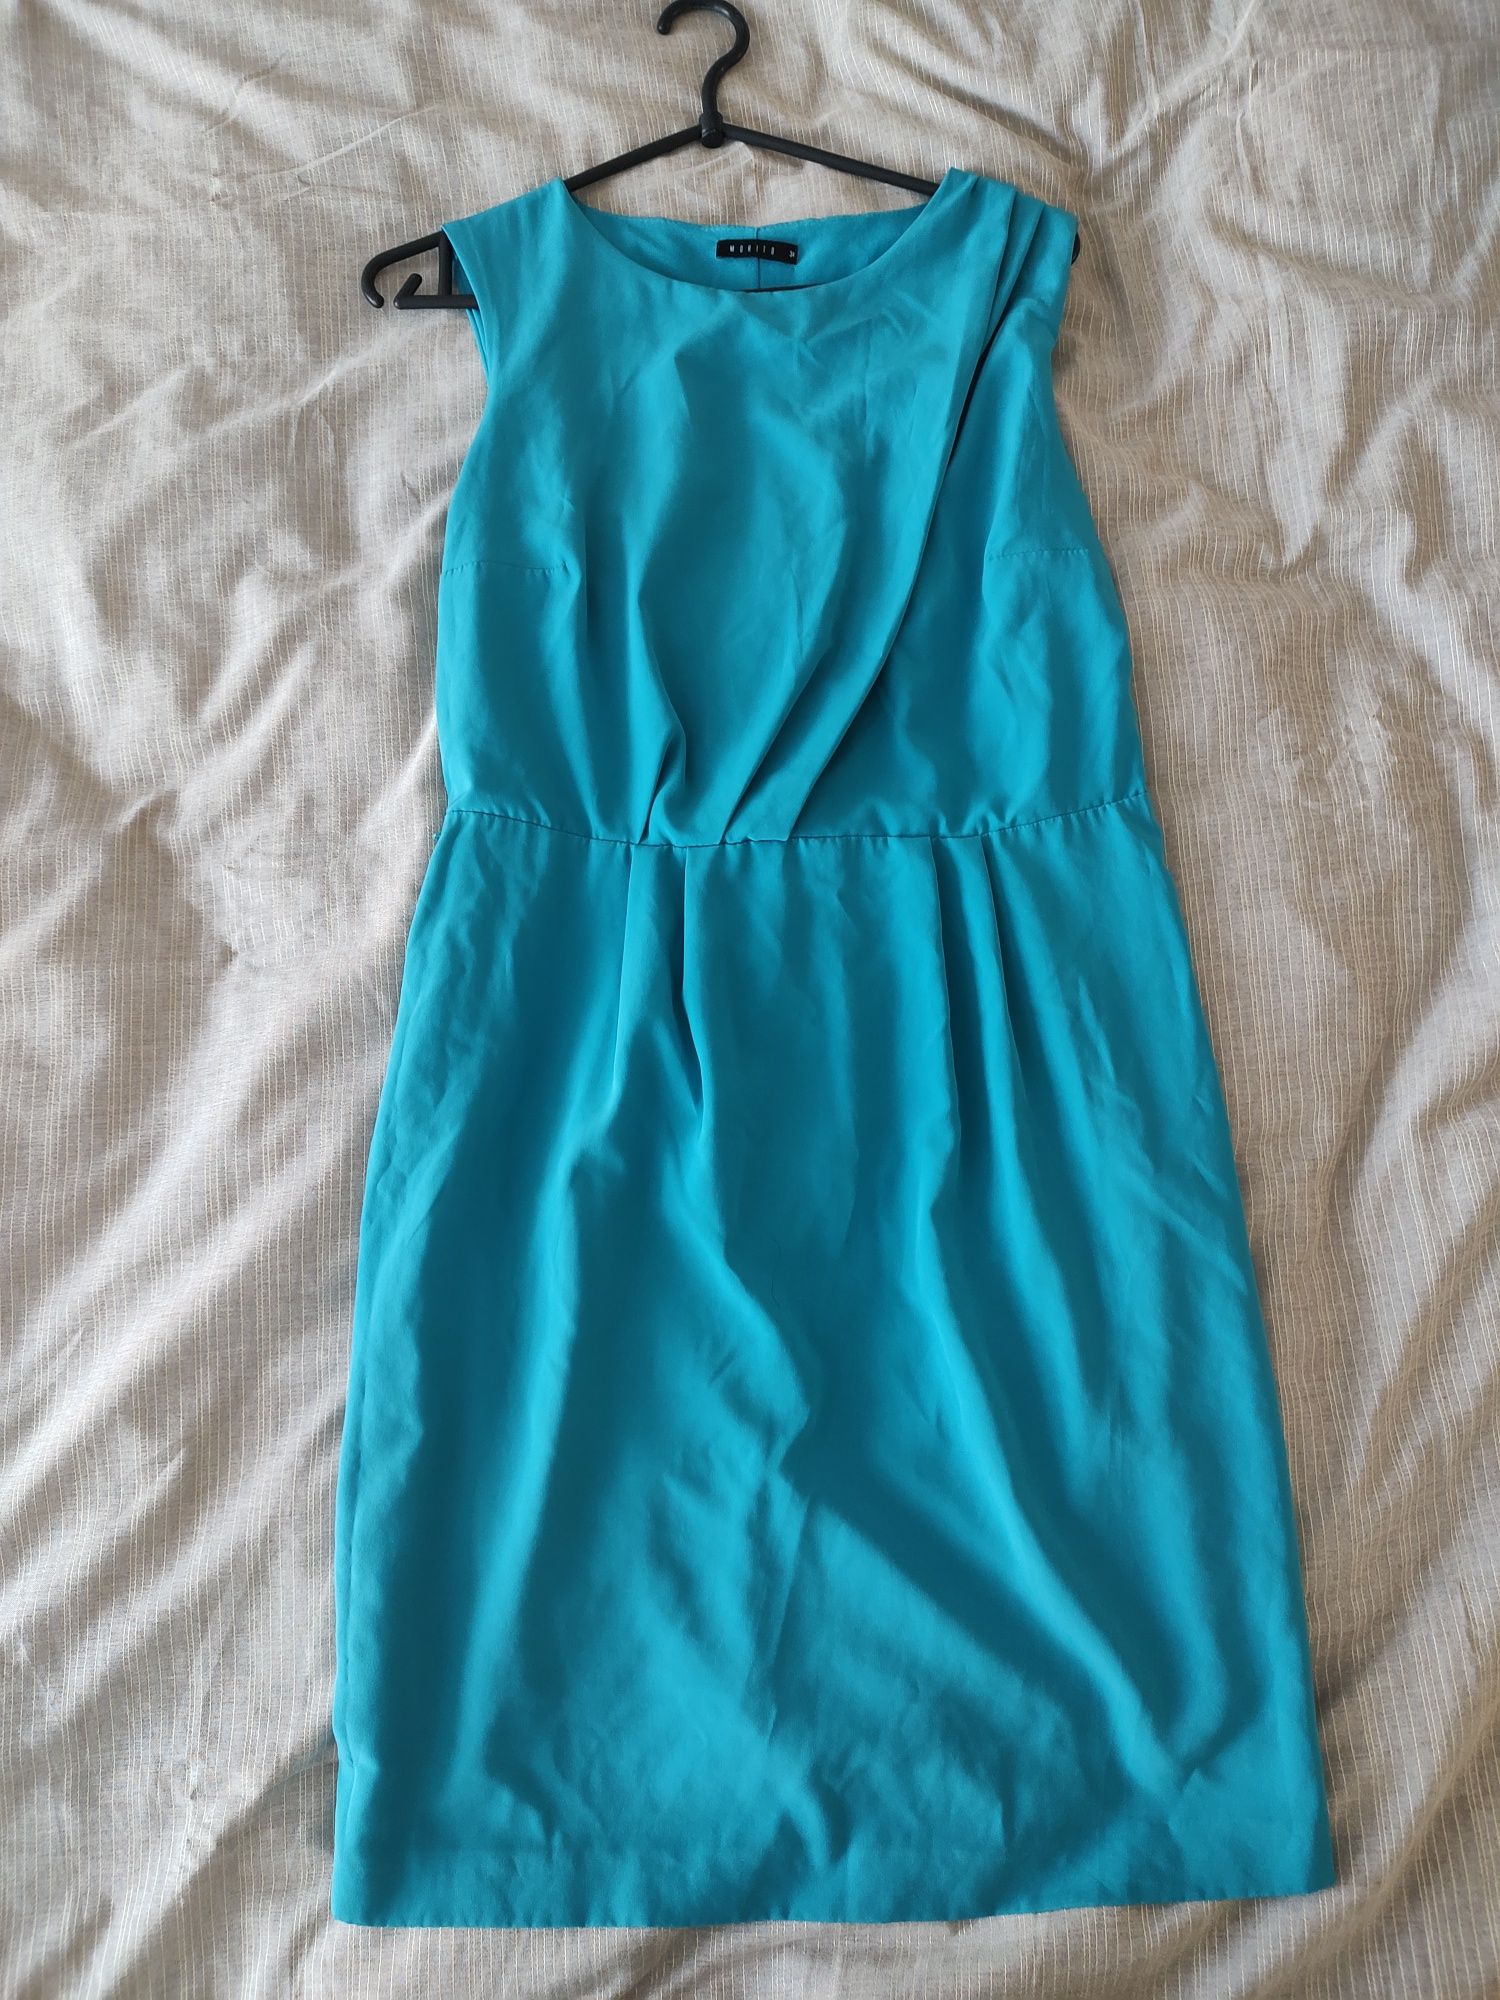 Mohito, sukienka niebieska /turkusowa/ morska, 34